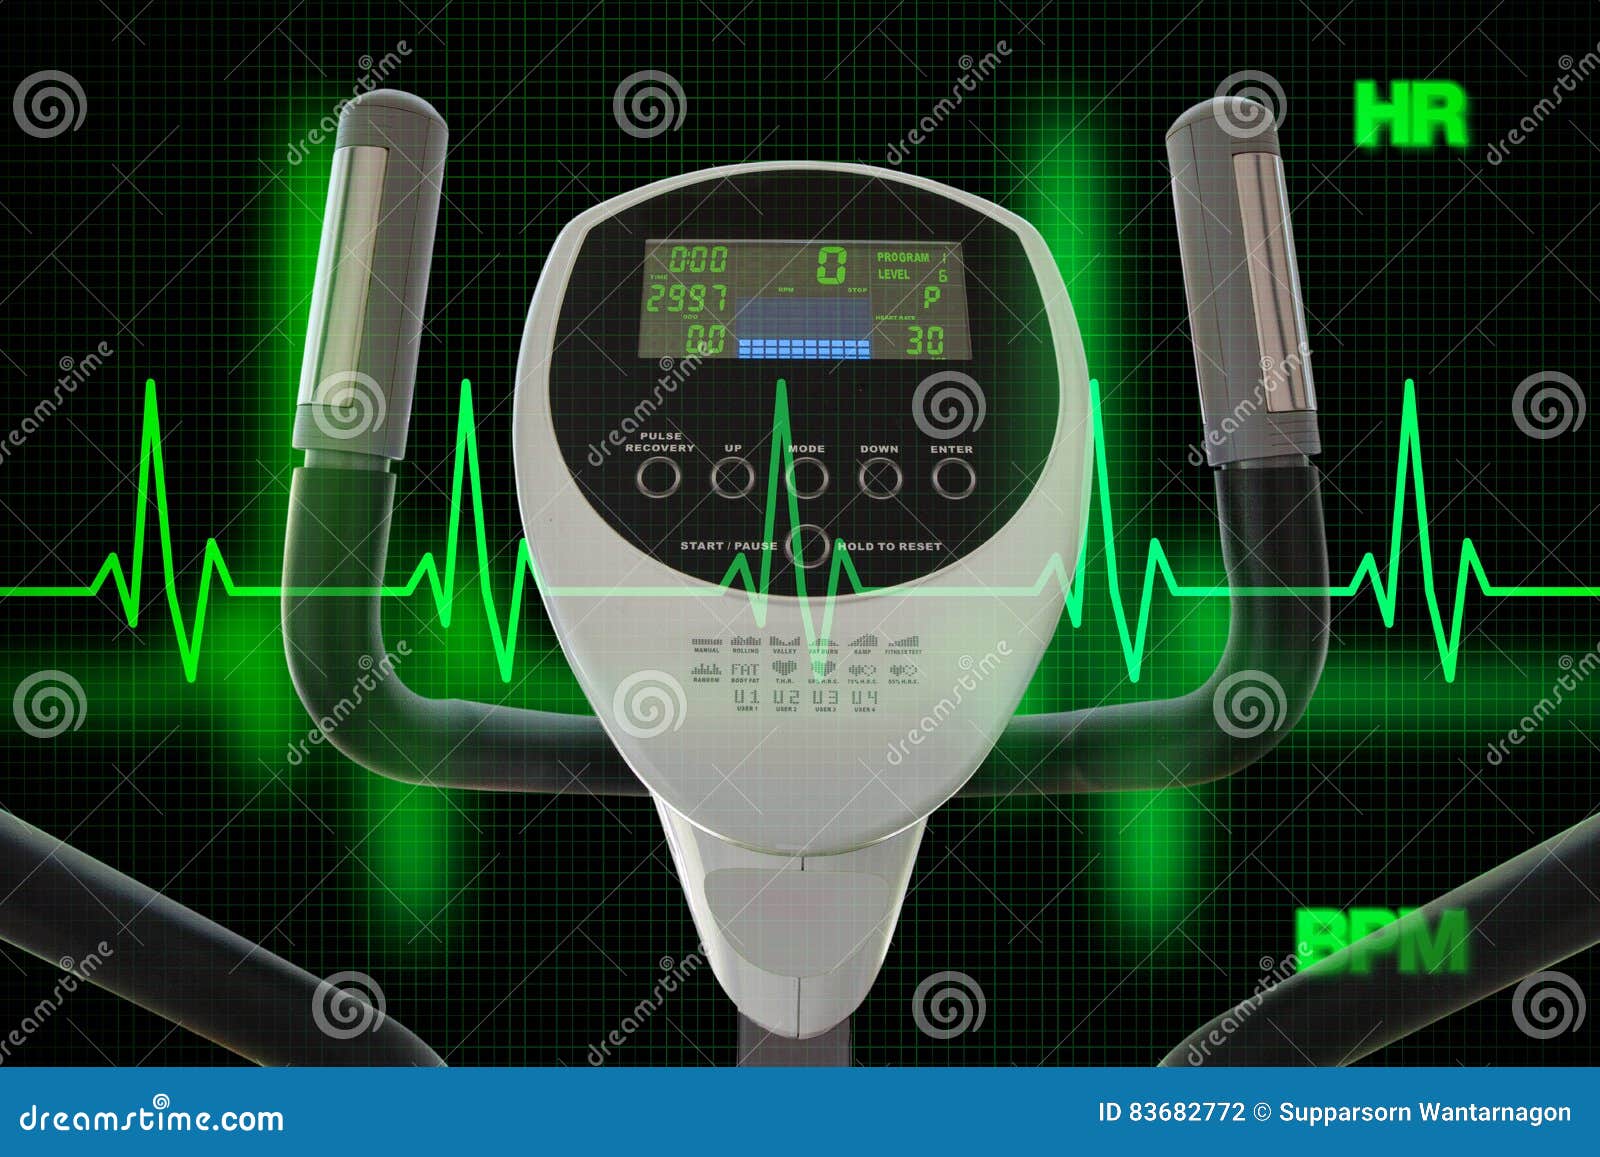 Эллиптическая машина для работать с диаграммой или автомобилем сердцебиения. Концепция здорового образа жизни проиллюстрированная эллиптической машиной для диаграммы работать и сердцебиения или cardiogram используя метод двойной экспозиции